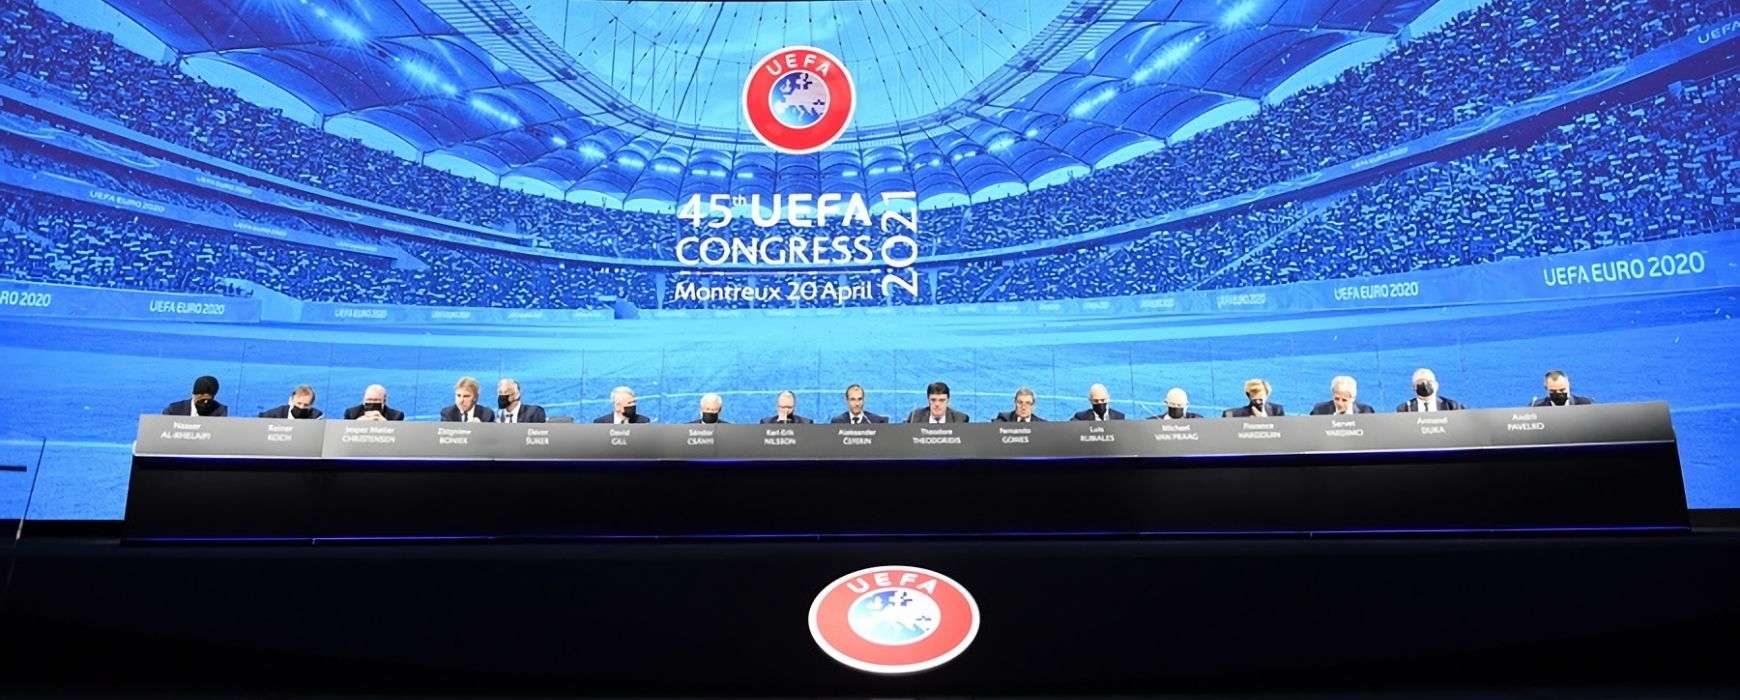 55 ομοσπονδίες καταδίκασαν τη διακήρυξη για την European Super League